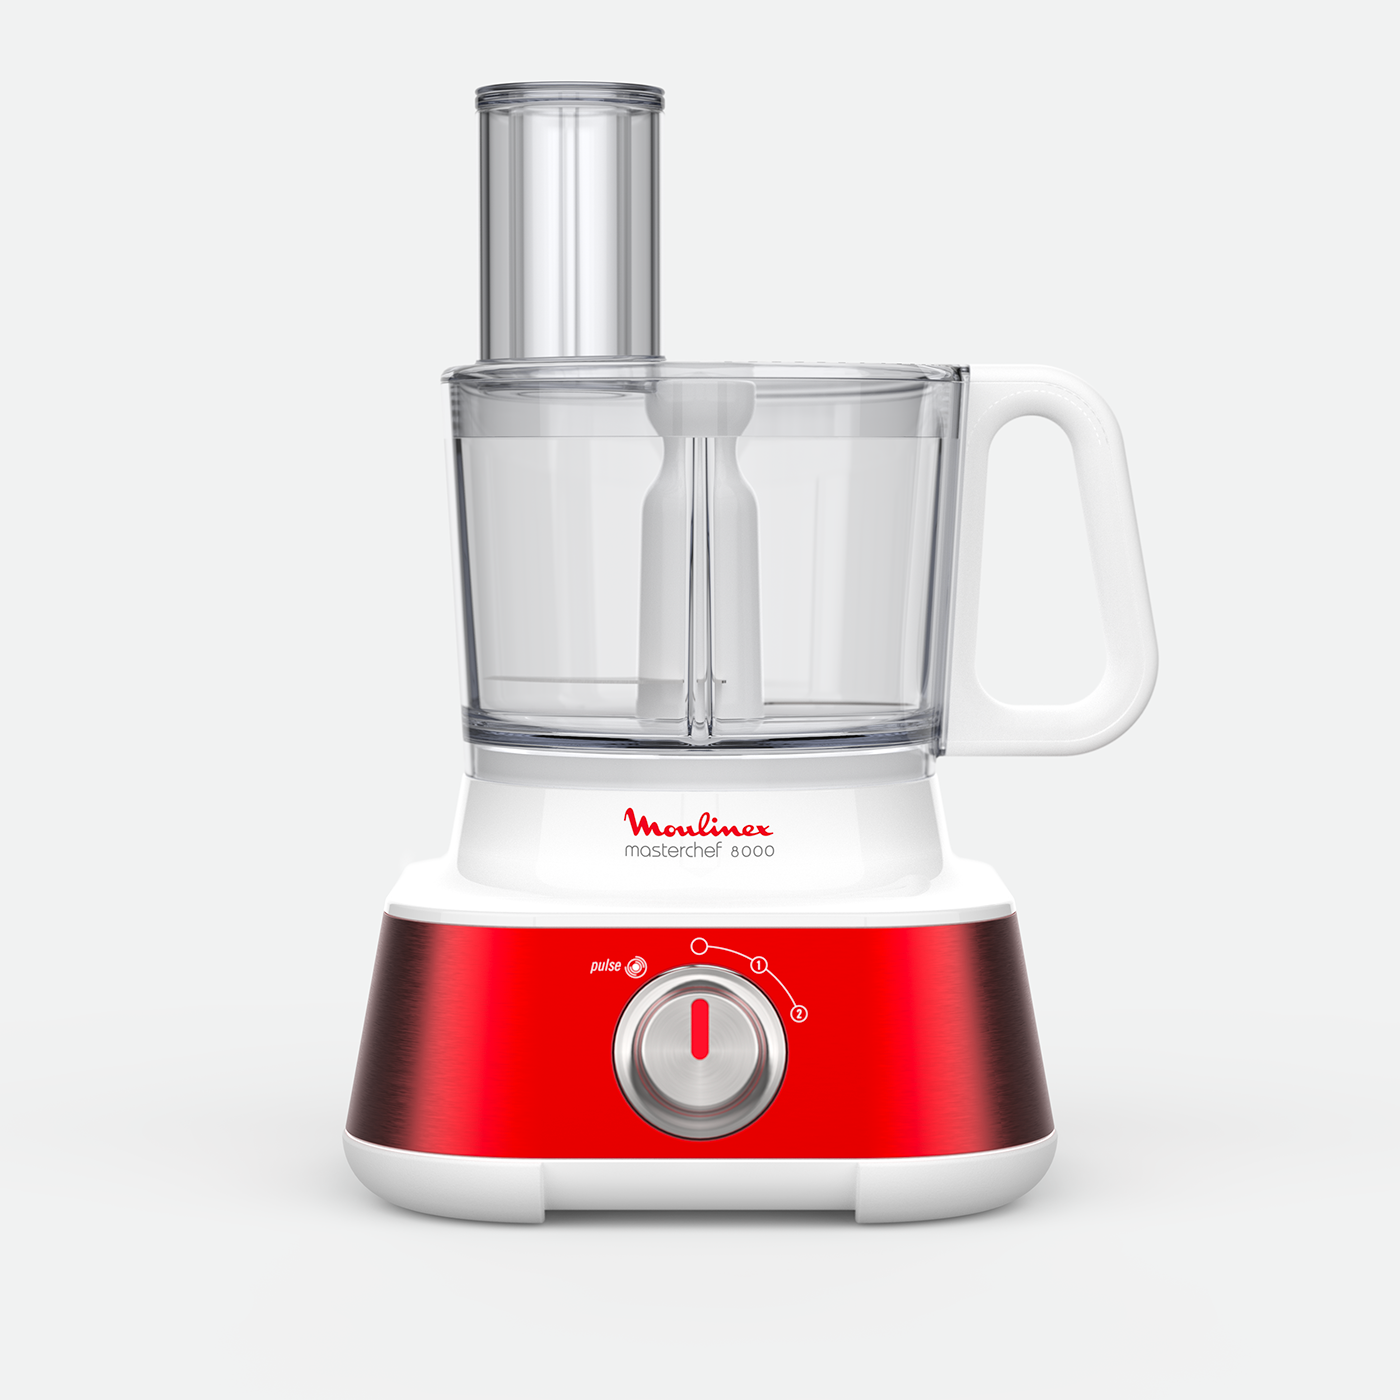 Adobe Portfolio industrial design  product design  Kitchen Appliance moulinex red David Moreeuw Masterchef